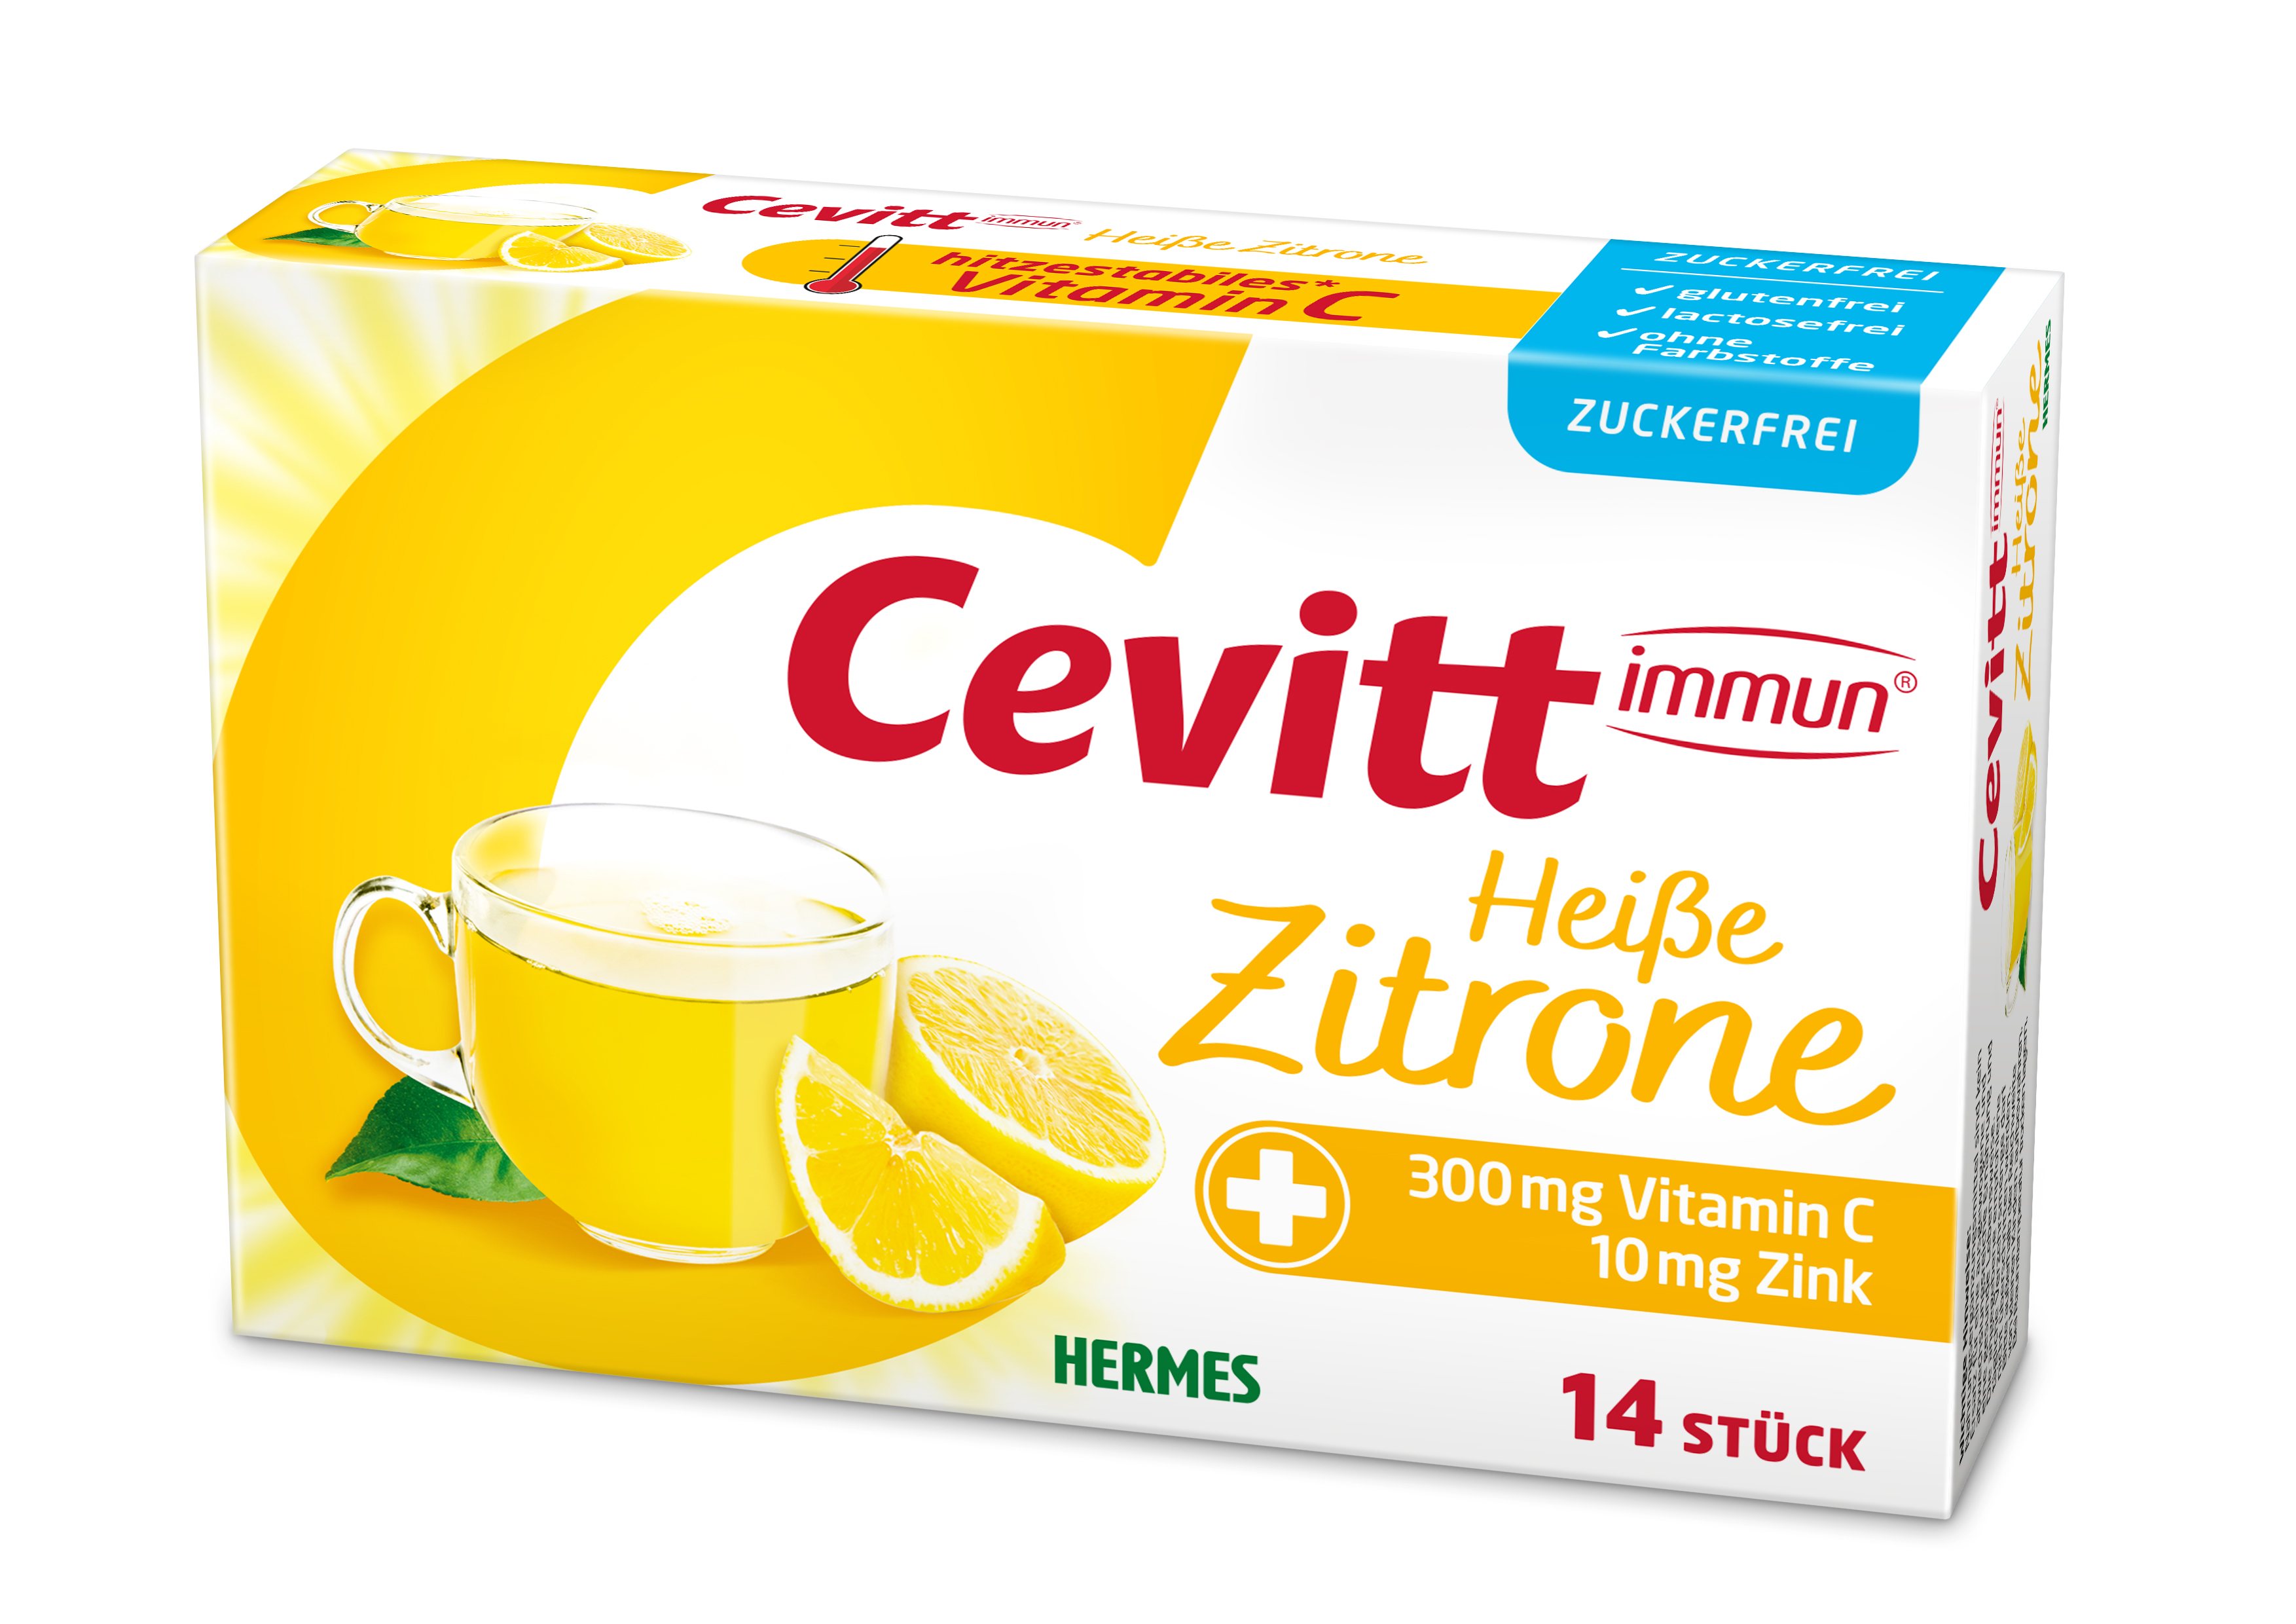 Cevitt immun® Heiße Zitrone zuckerfrei 14 ST